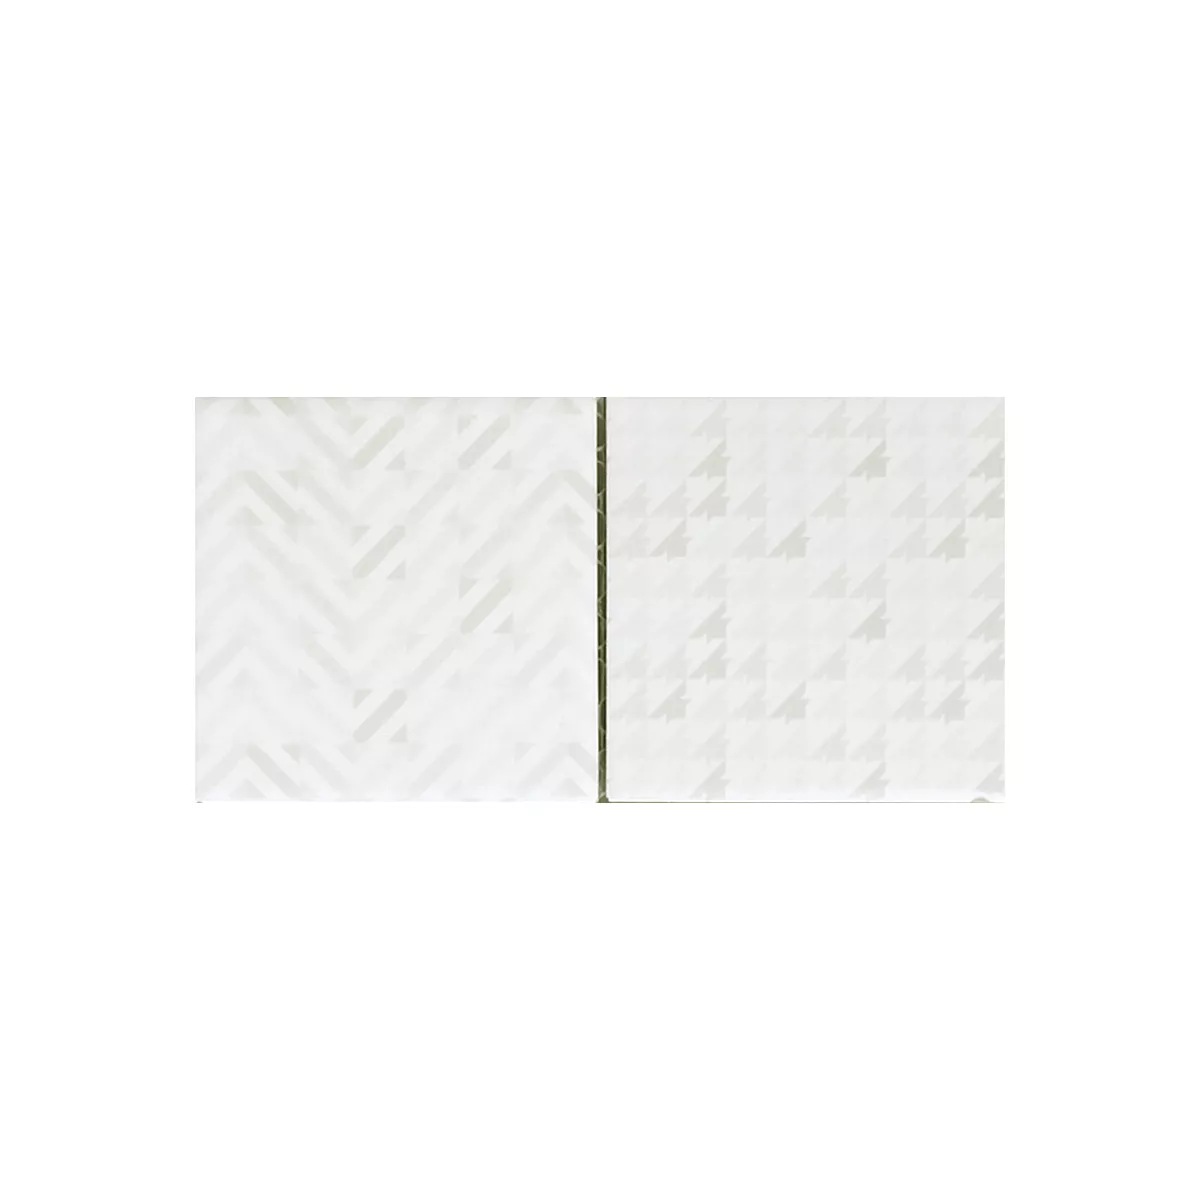 Campione Mosaico Ceramica Cemento Ottica Geo Bianco